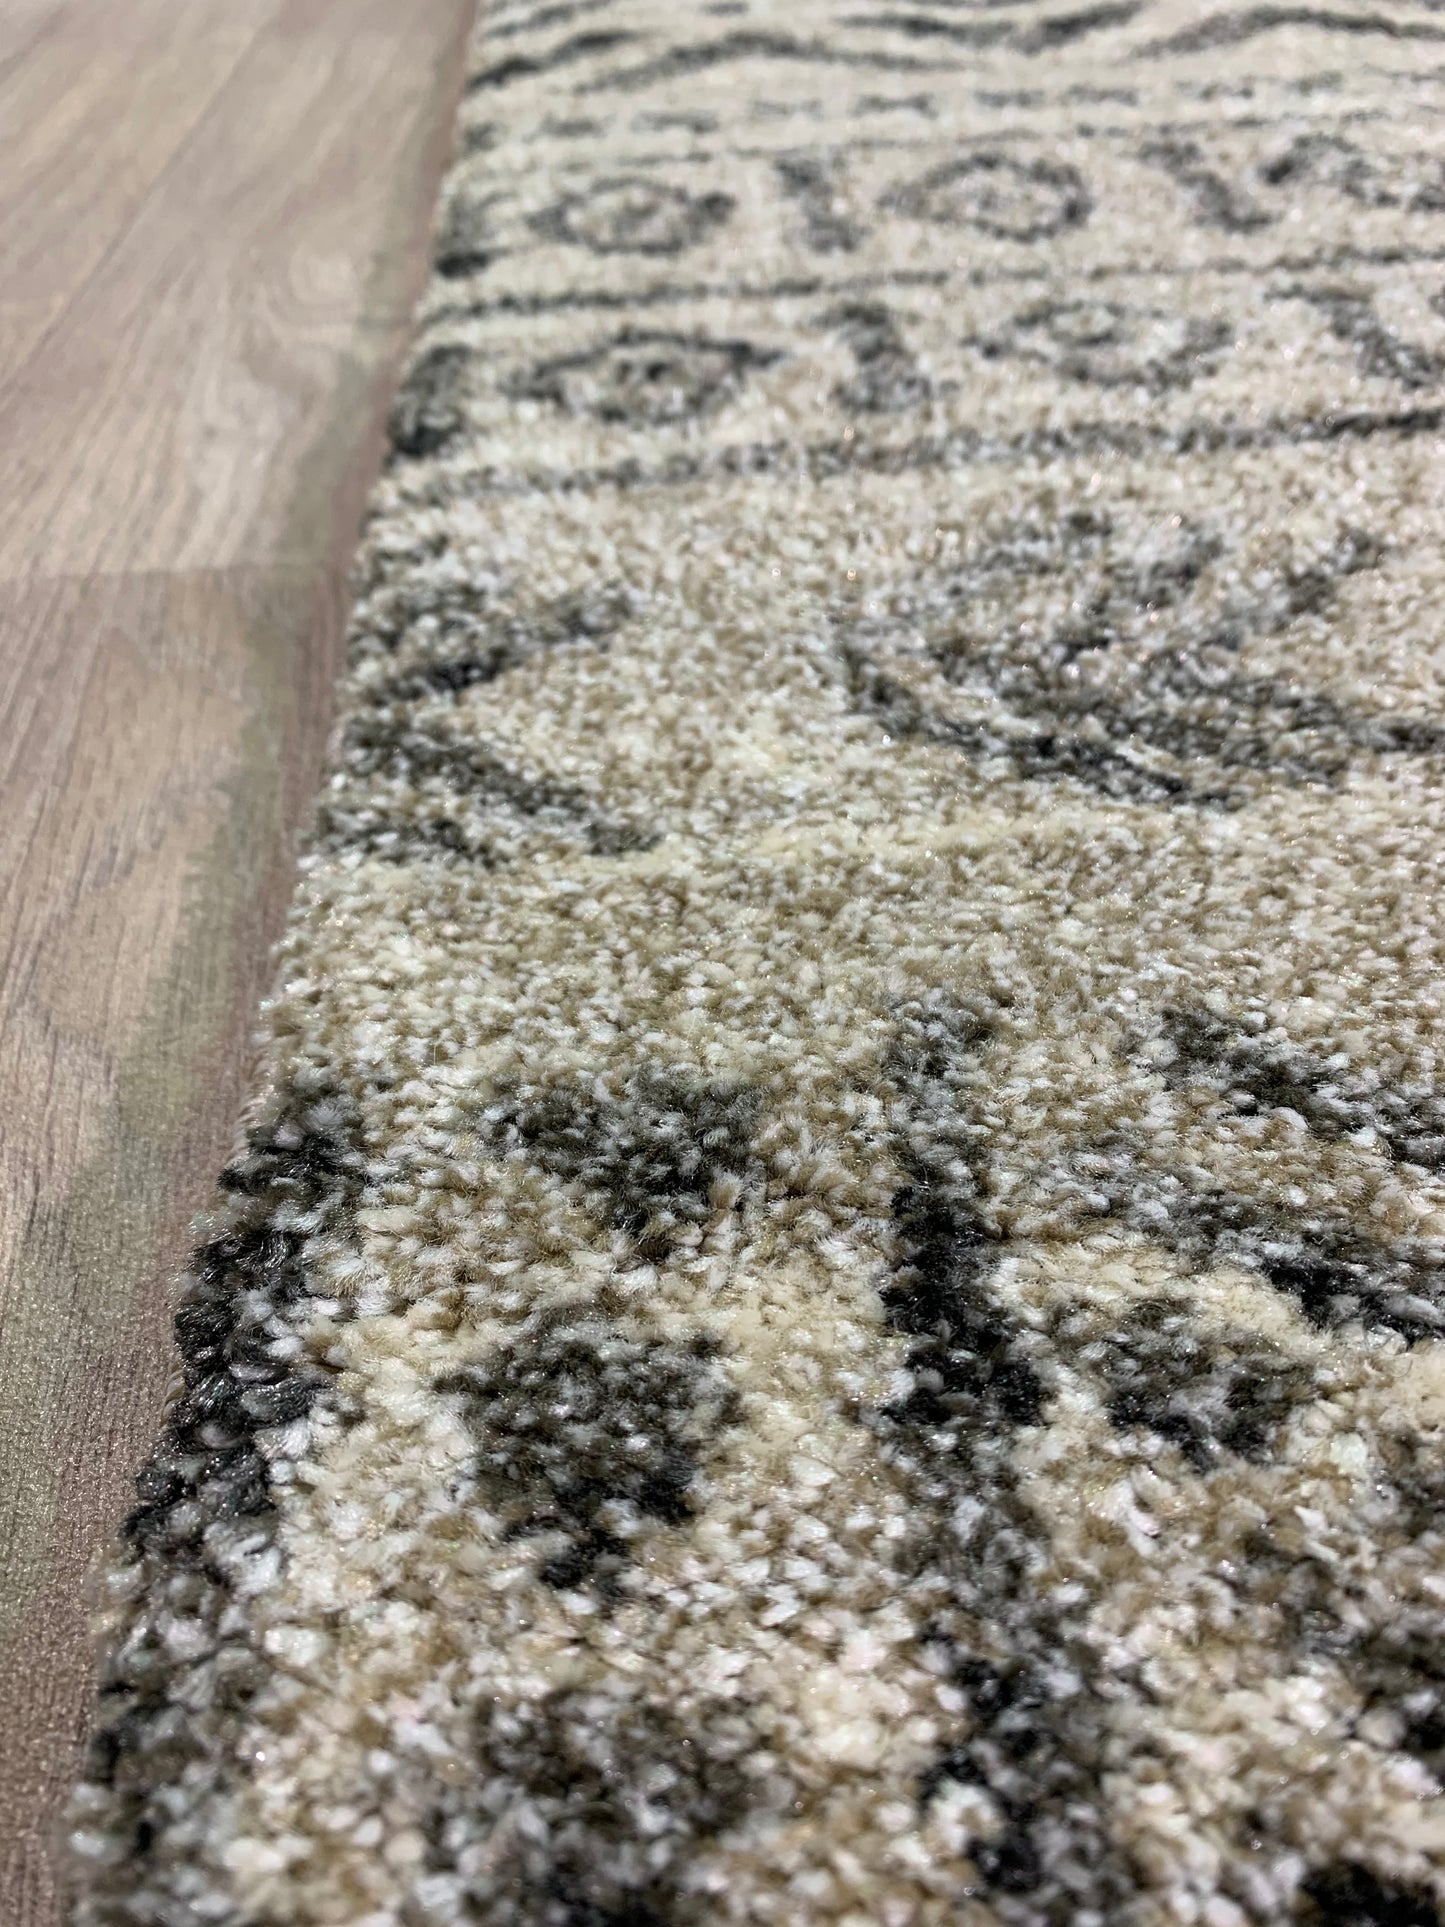 EM-201: Synthetic fiber rug